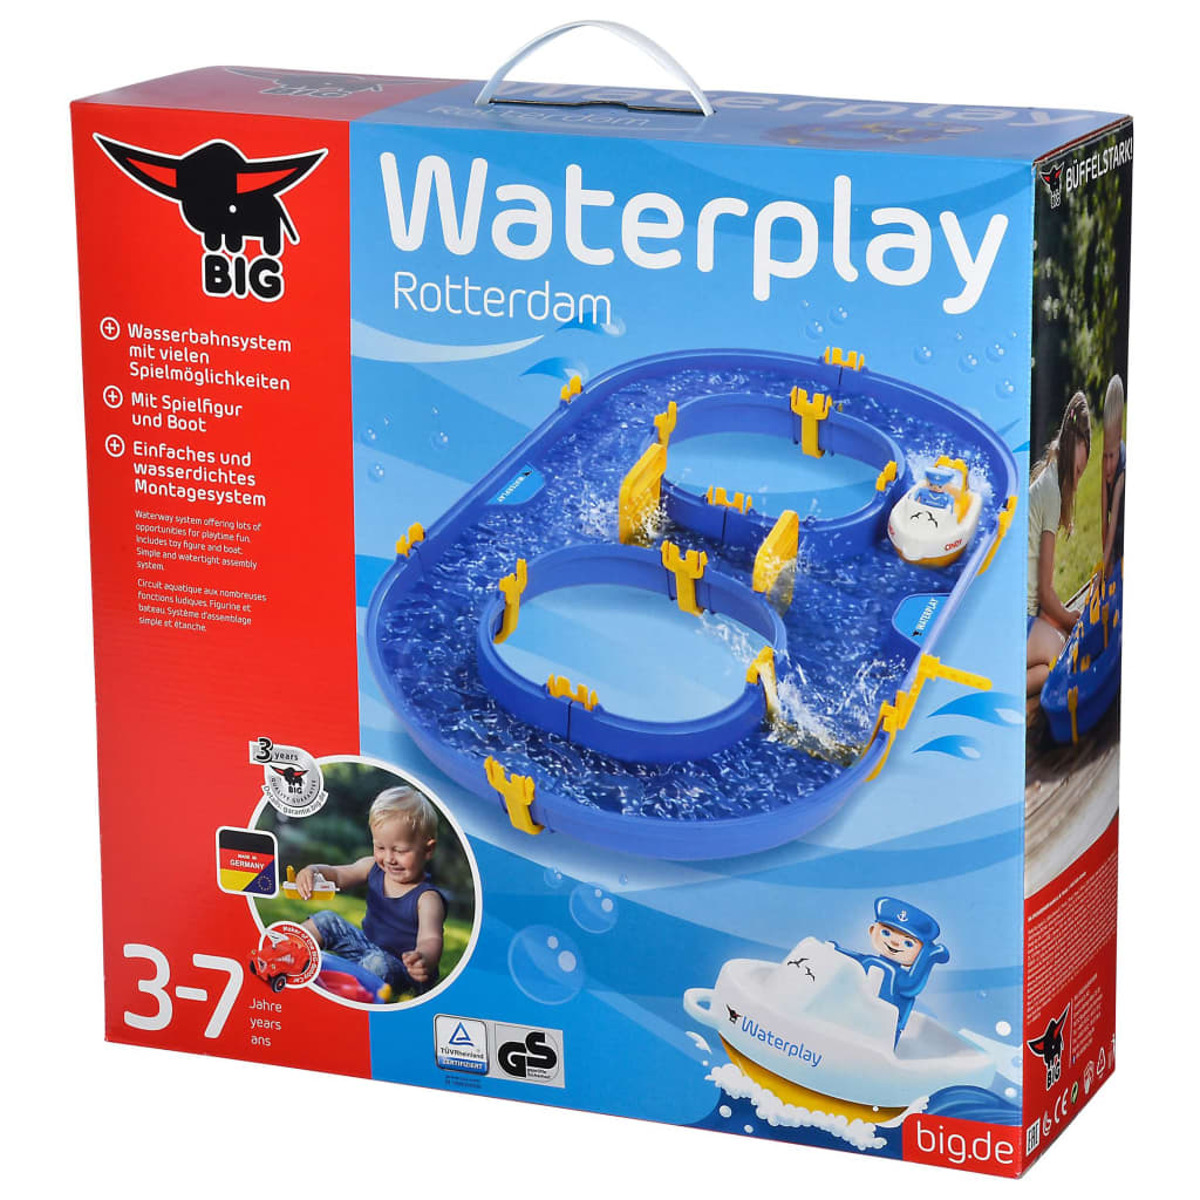 BIG Waterplay Rotterdam 436528